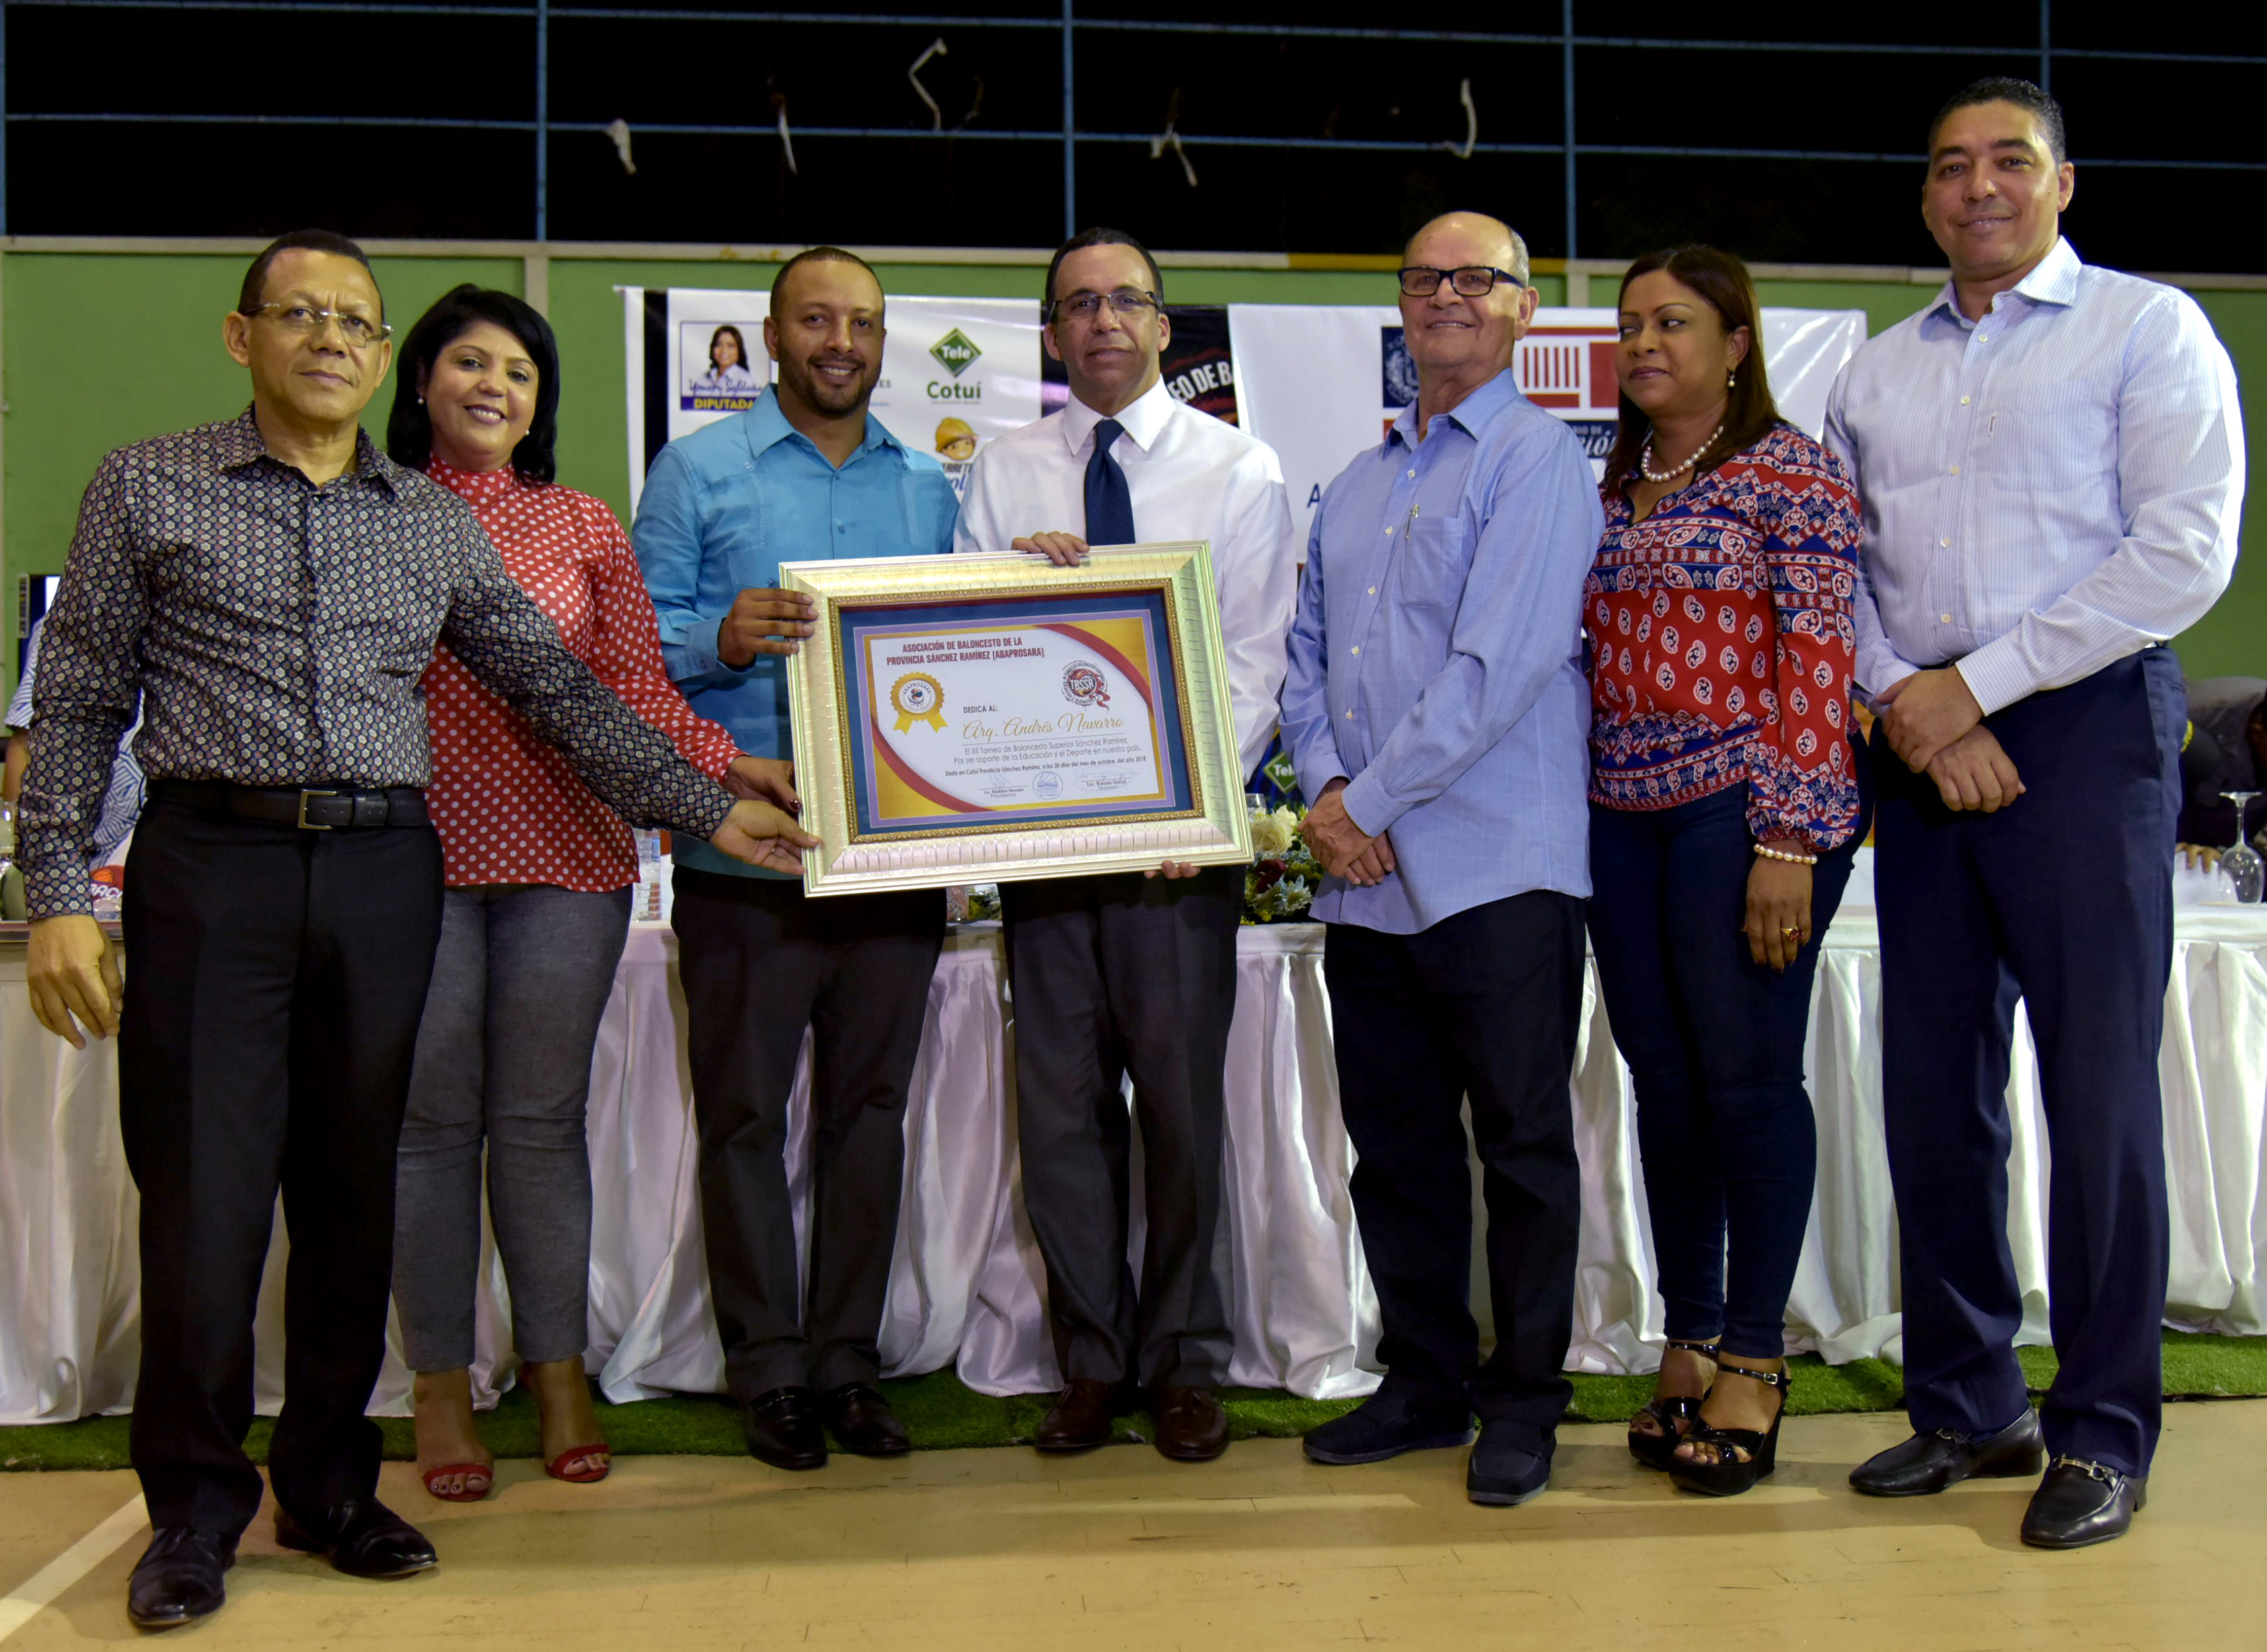  imagen Ministro Andrés Navarro de pie sosteniendo balón de basketbal junto a estudiantes y representantes de la Asociación de Baloncesto de Sánchez Ramírez
  